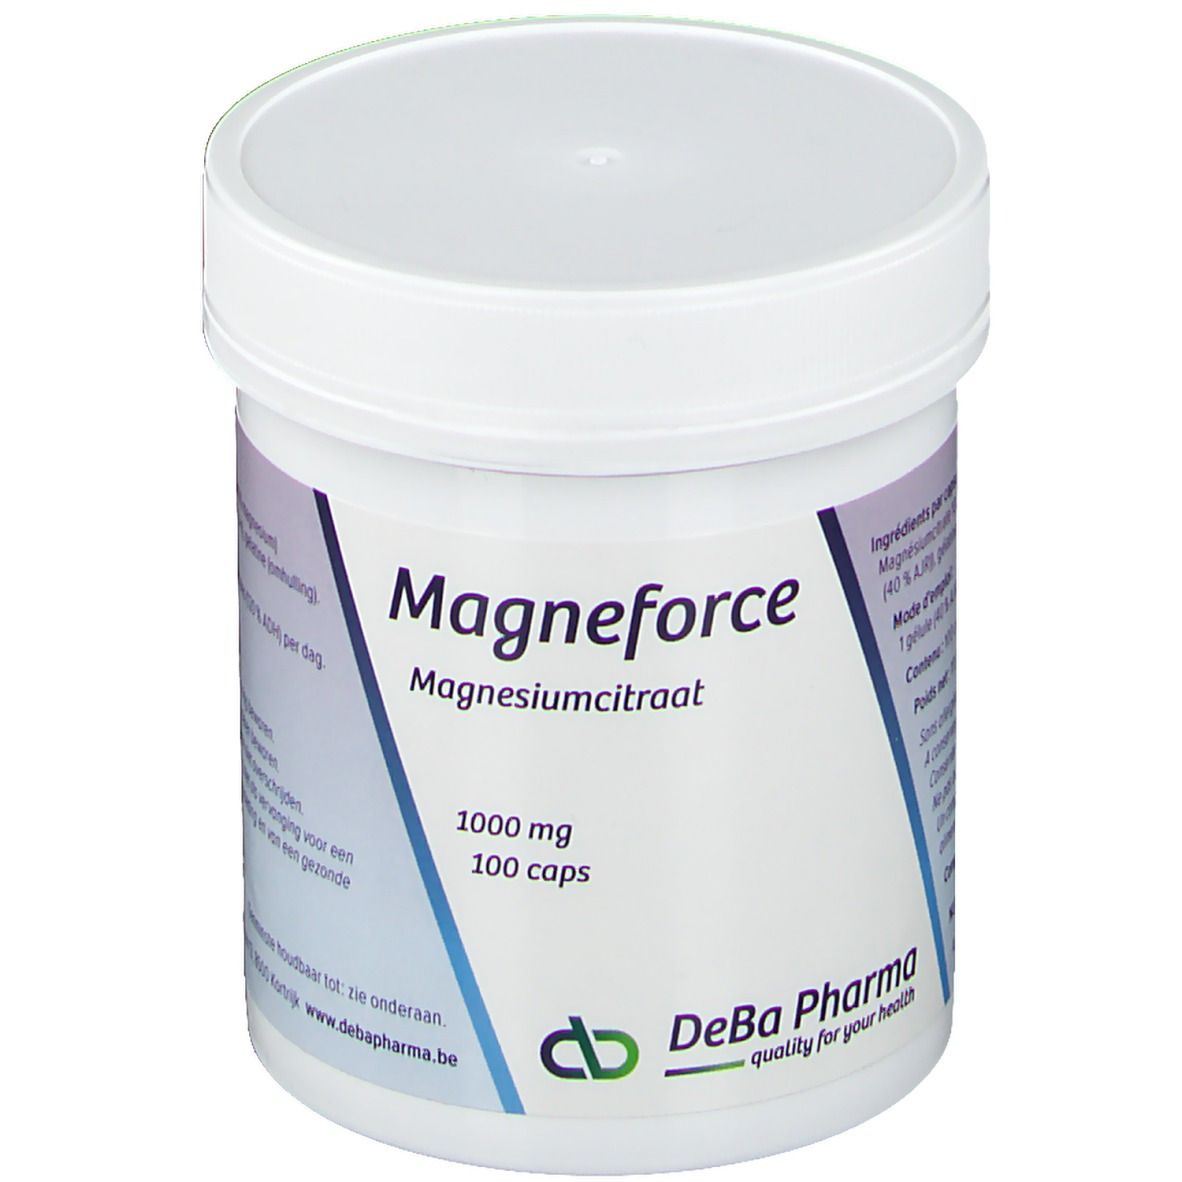 DeBa Pharma Magneforce 1000 mg